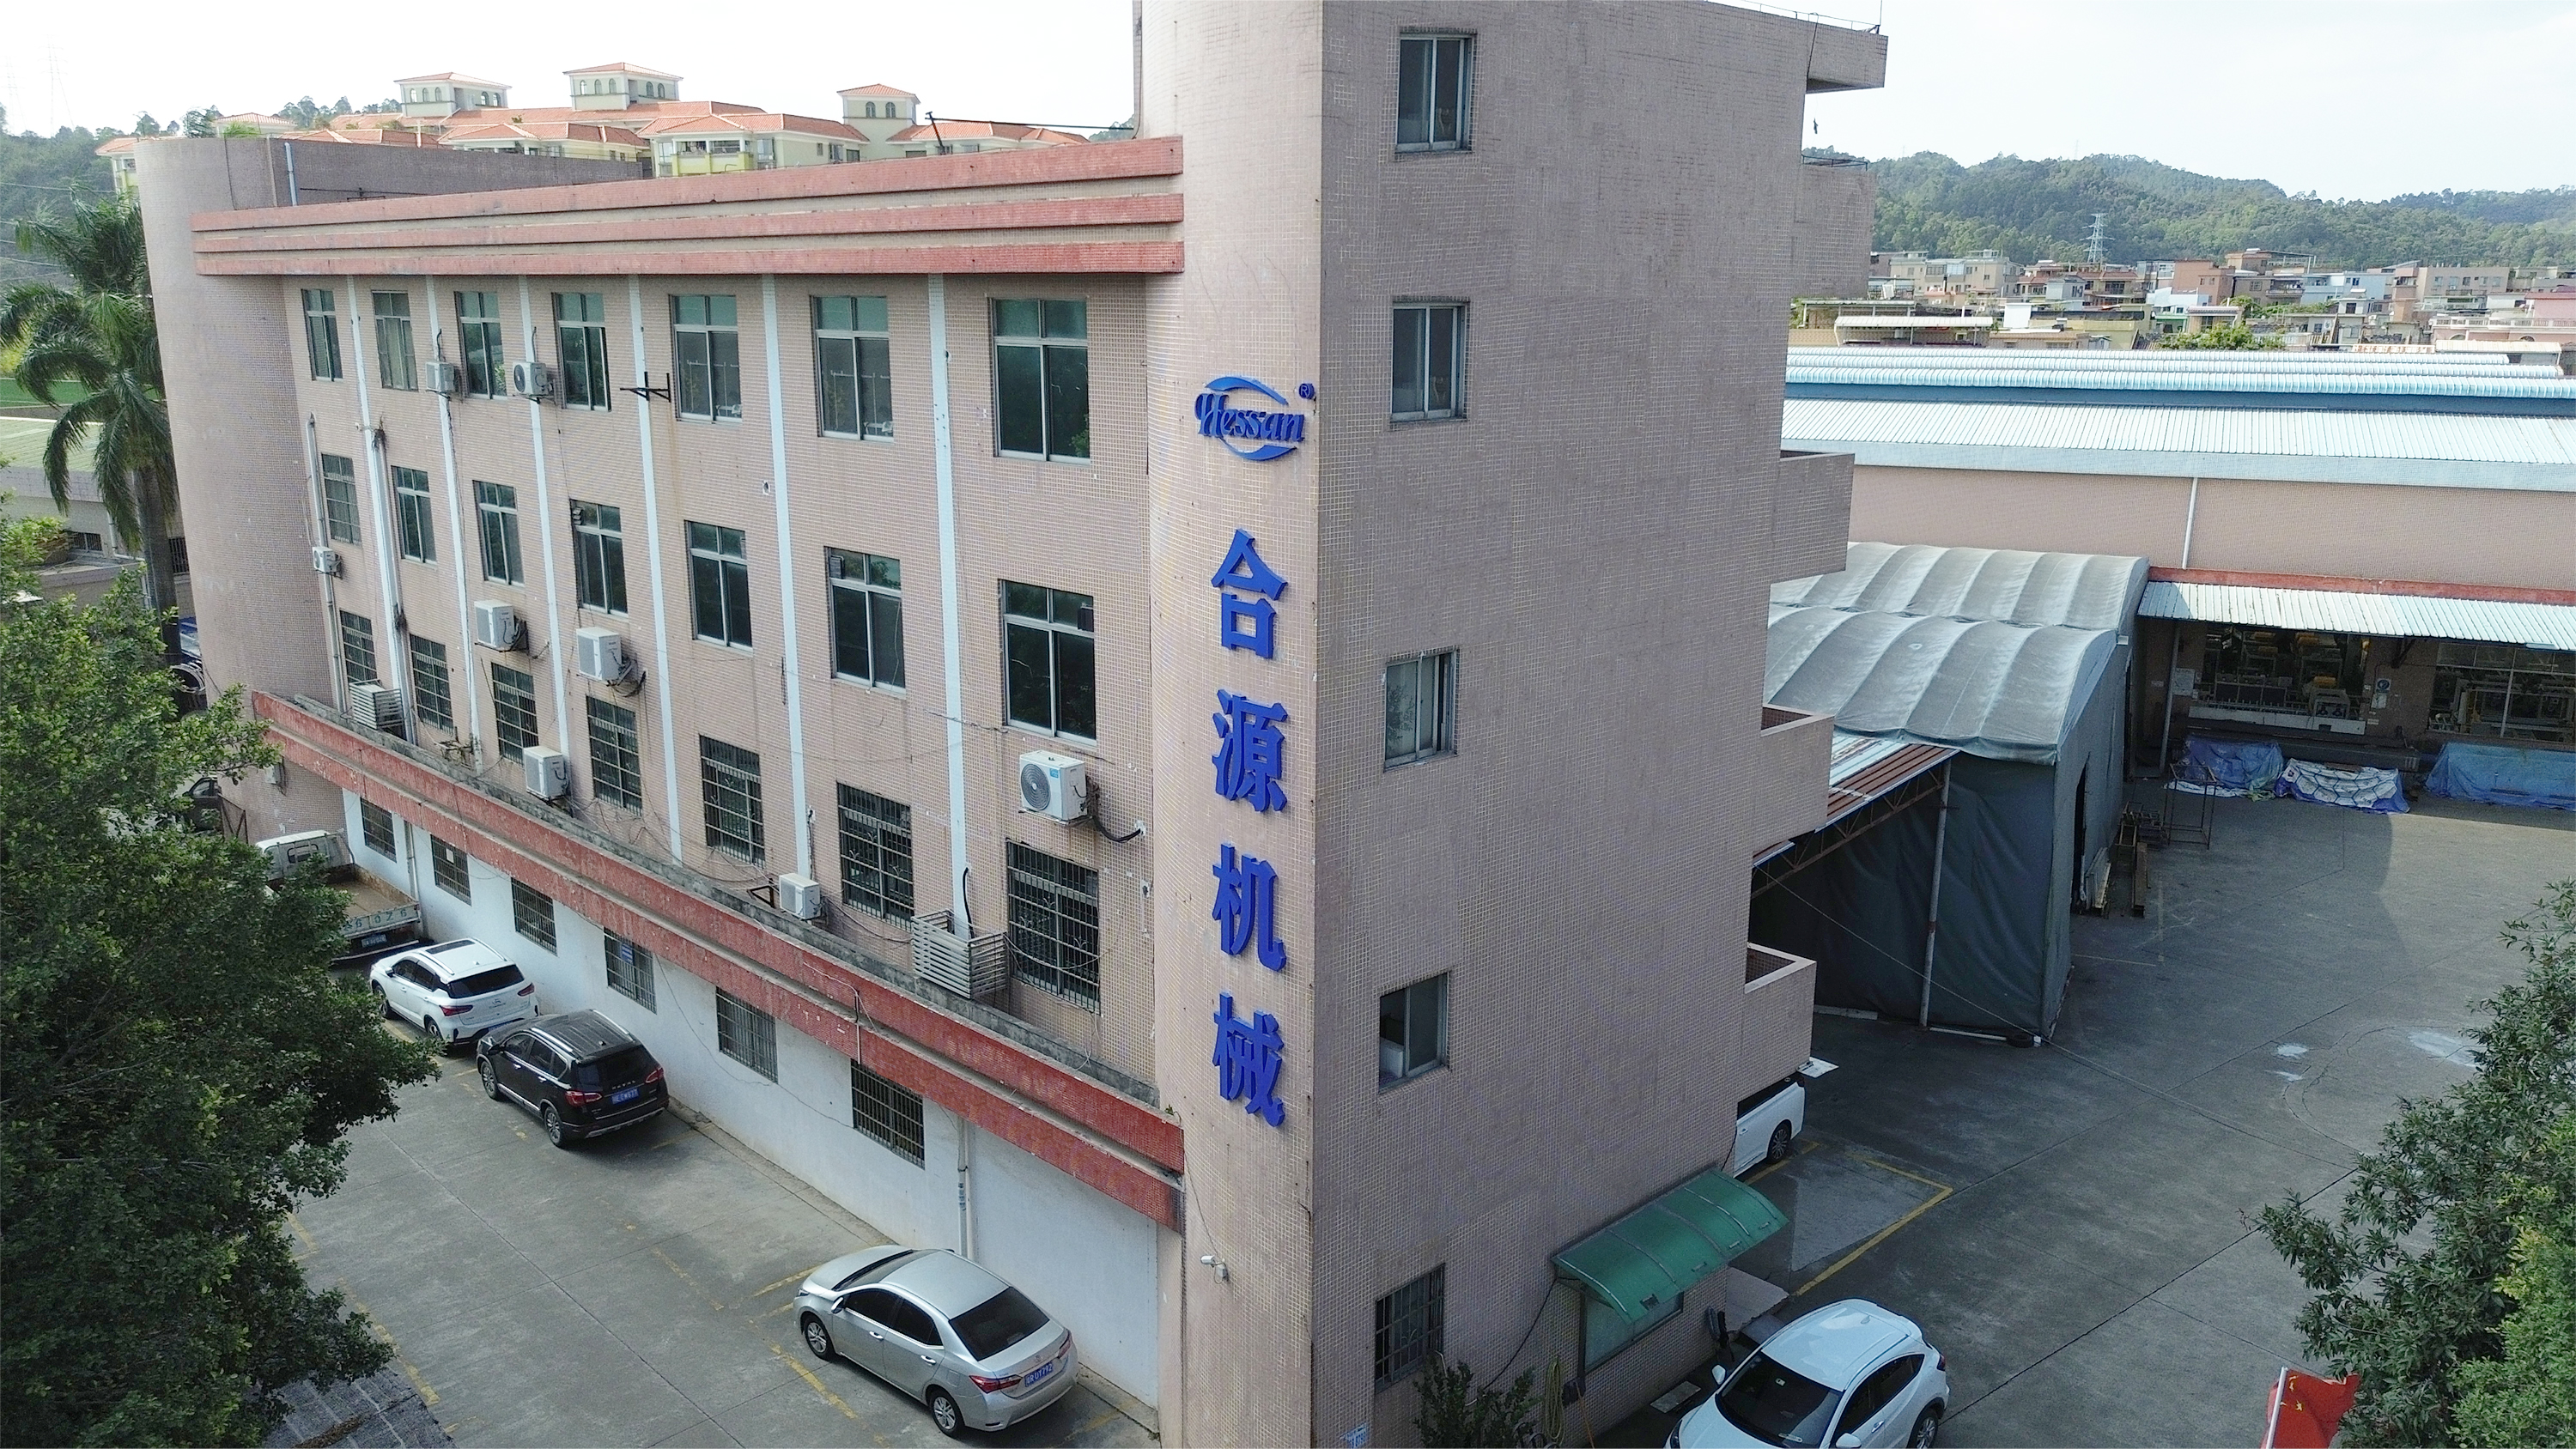 Guangzhou Hessan Woodworking Machinery Co., Ltd